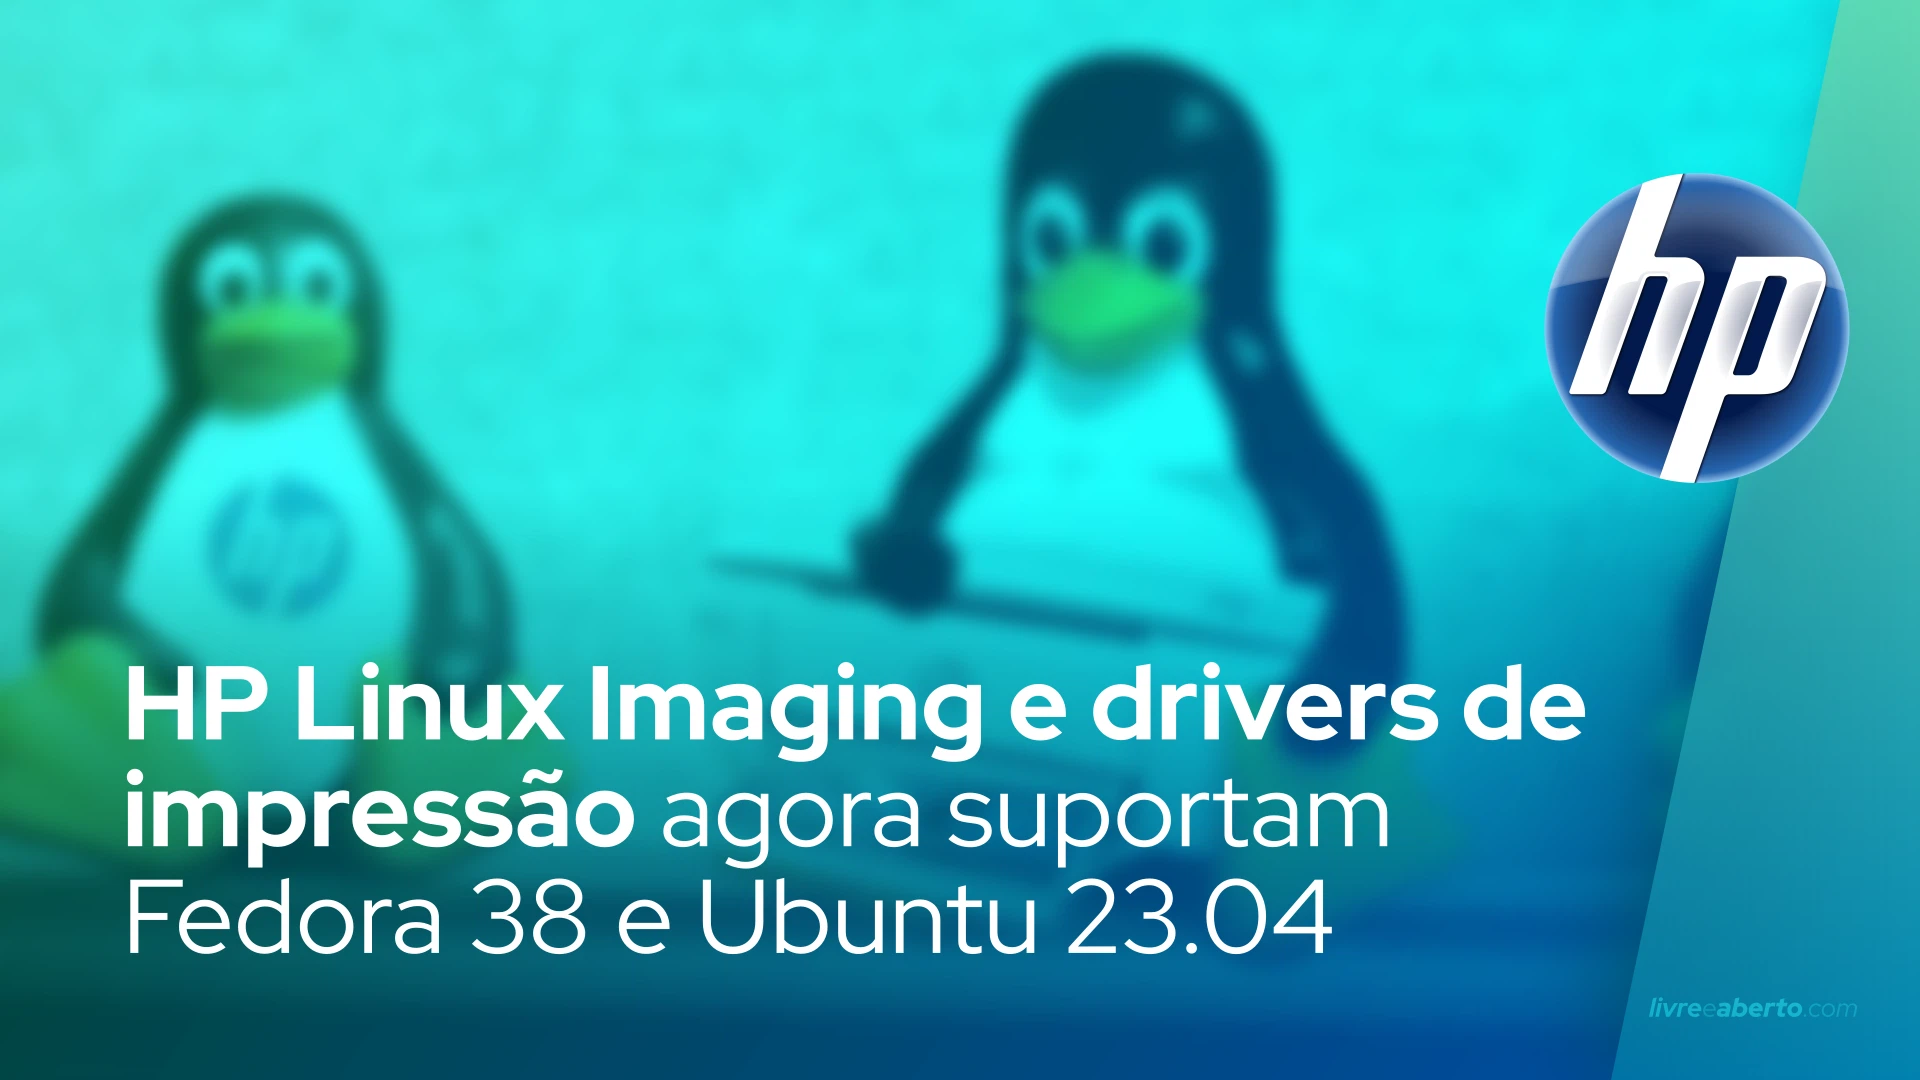 HP Linux Imaging e drivers de impressão agora suportam Fedora 38 e Ubuntu 23.04